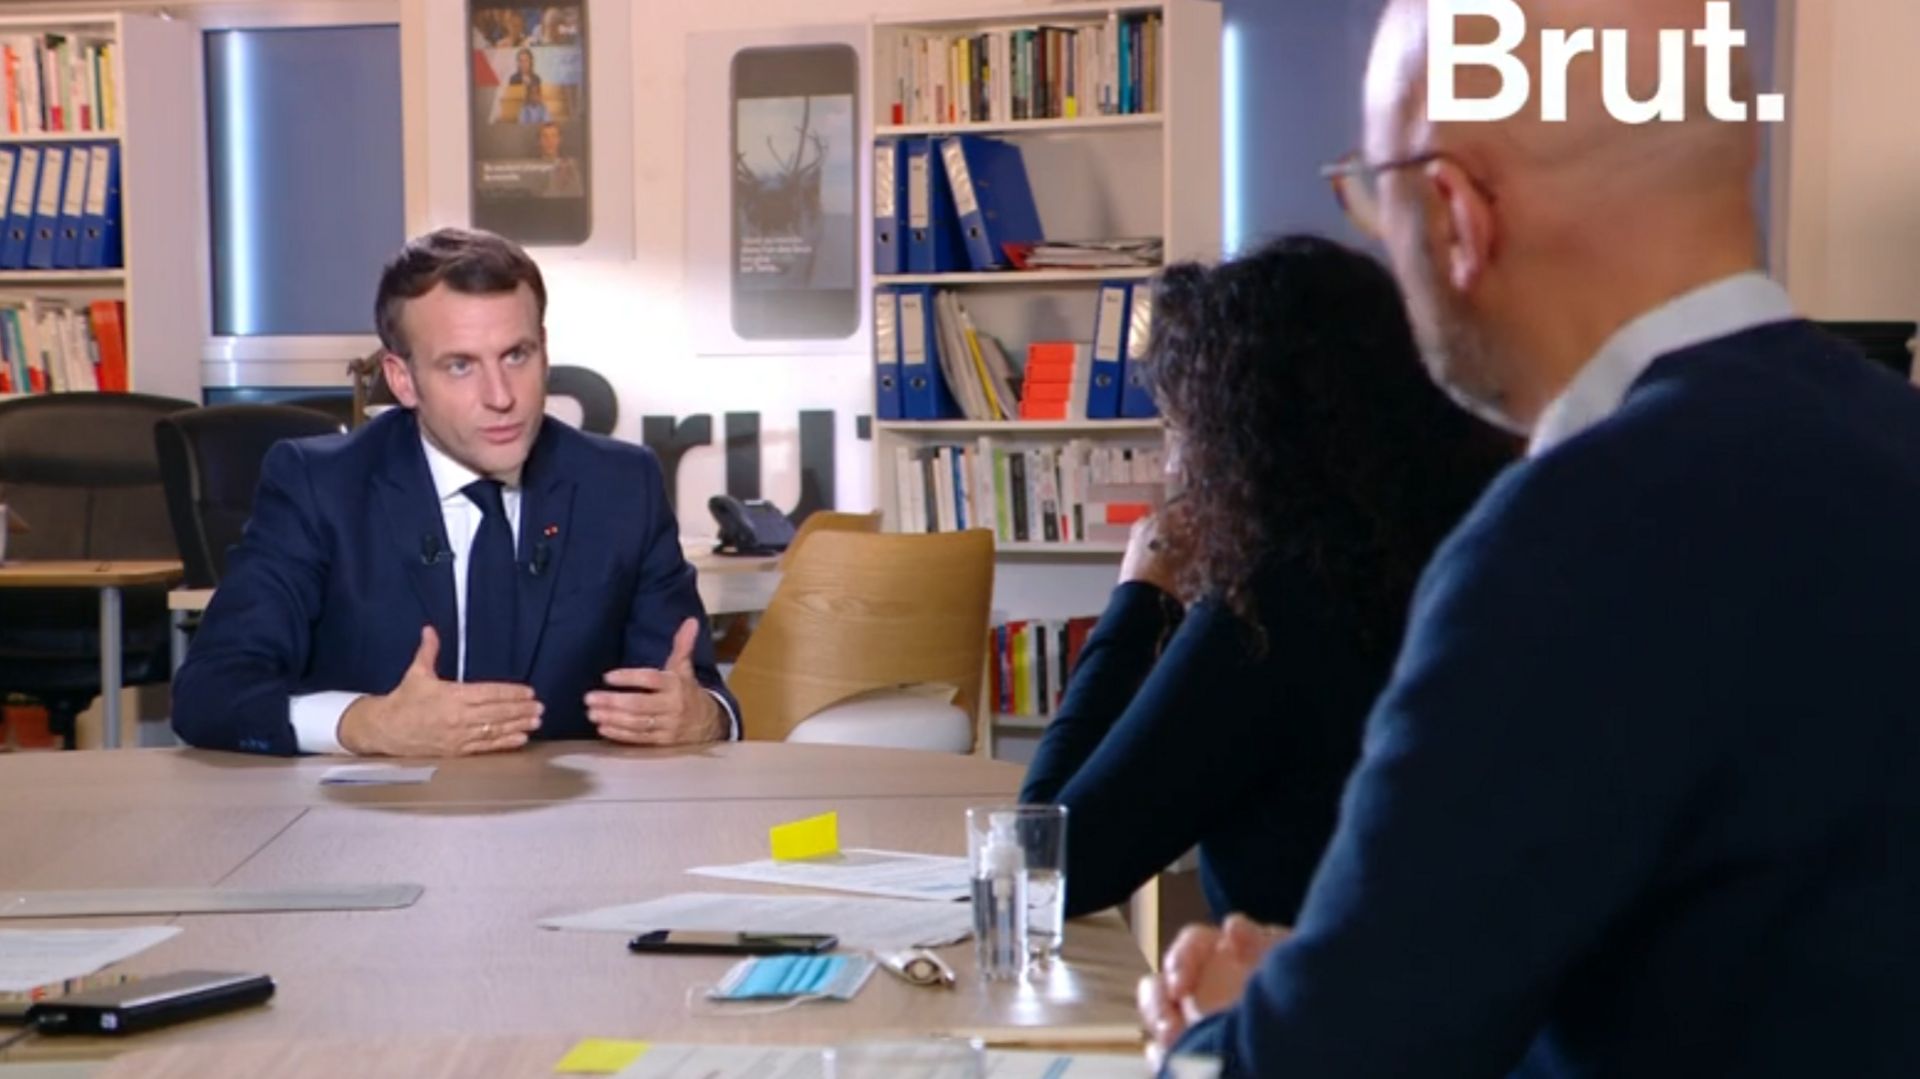 Emmanuel Macron : "C’est une honte que tous les policiers ne soient pas exemplaires."